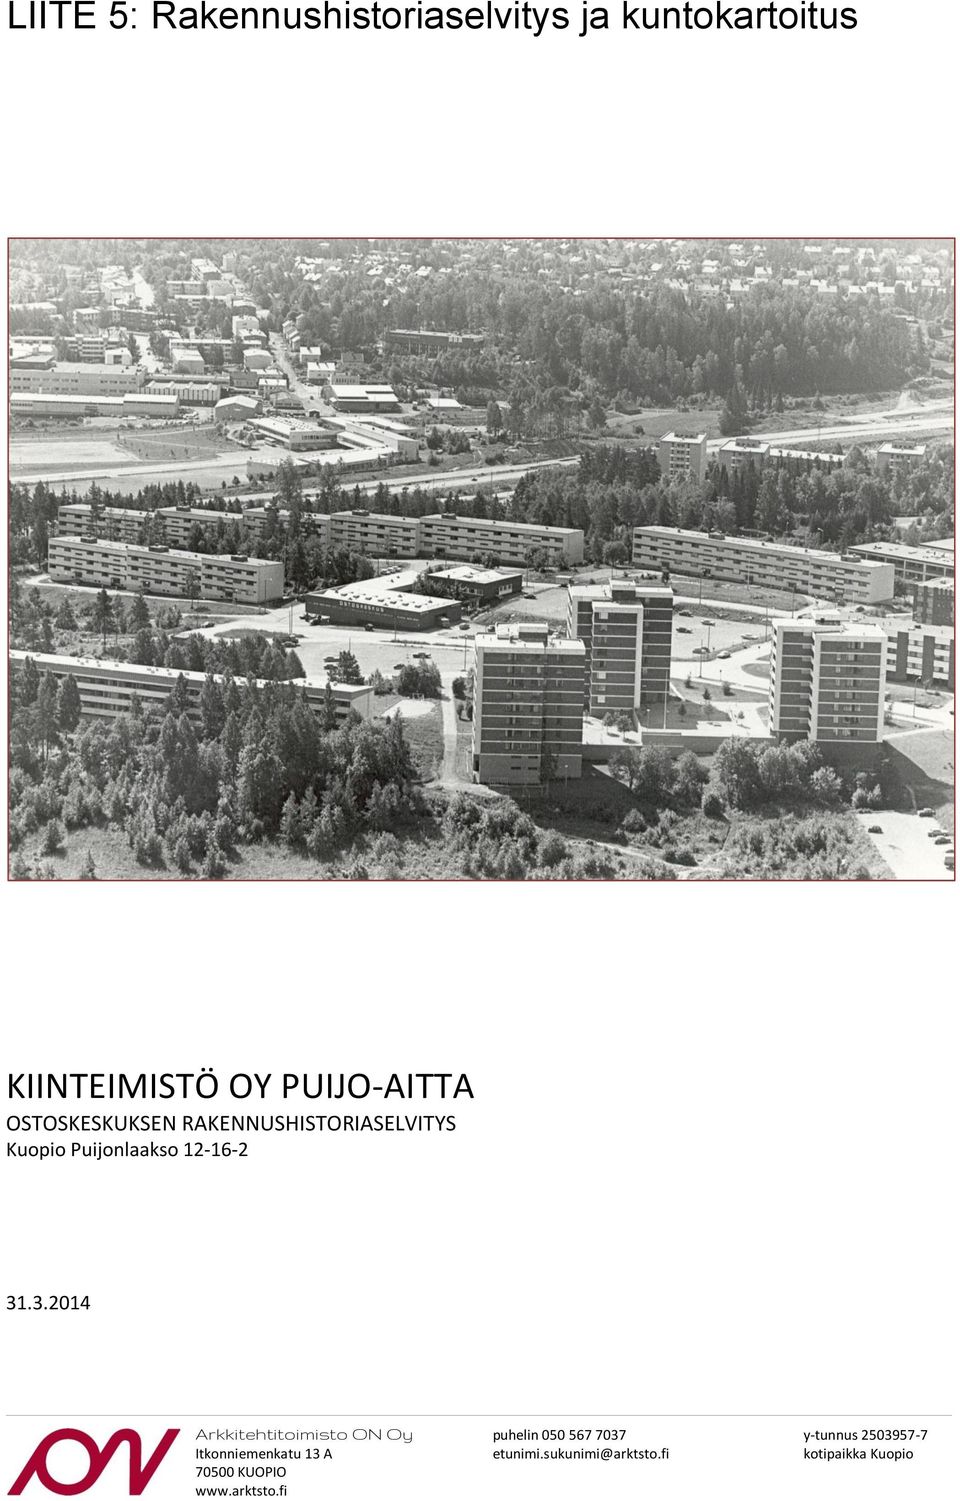 .3.2014 Arkkitehtitoimisto ON Oy Itkonniemenkatu 13 A 70500 KUOPIO www.arktsto.